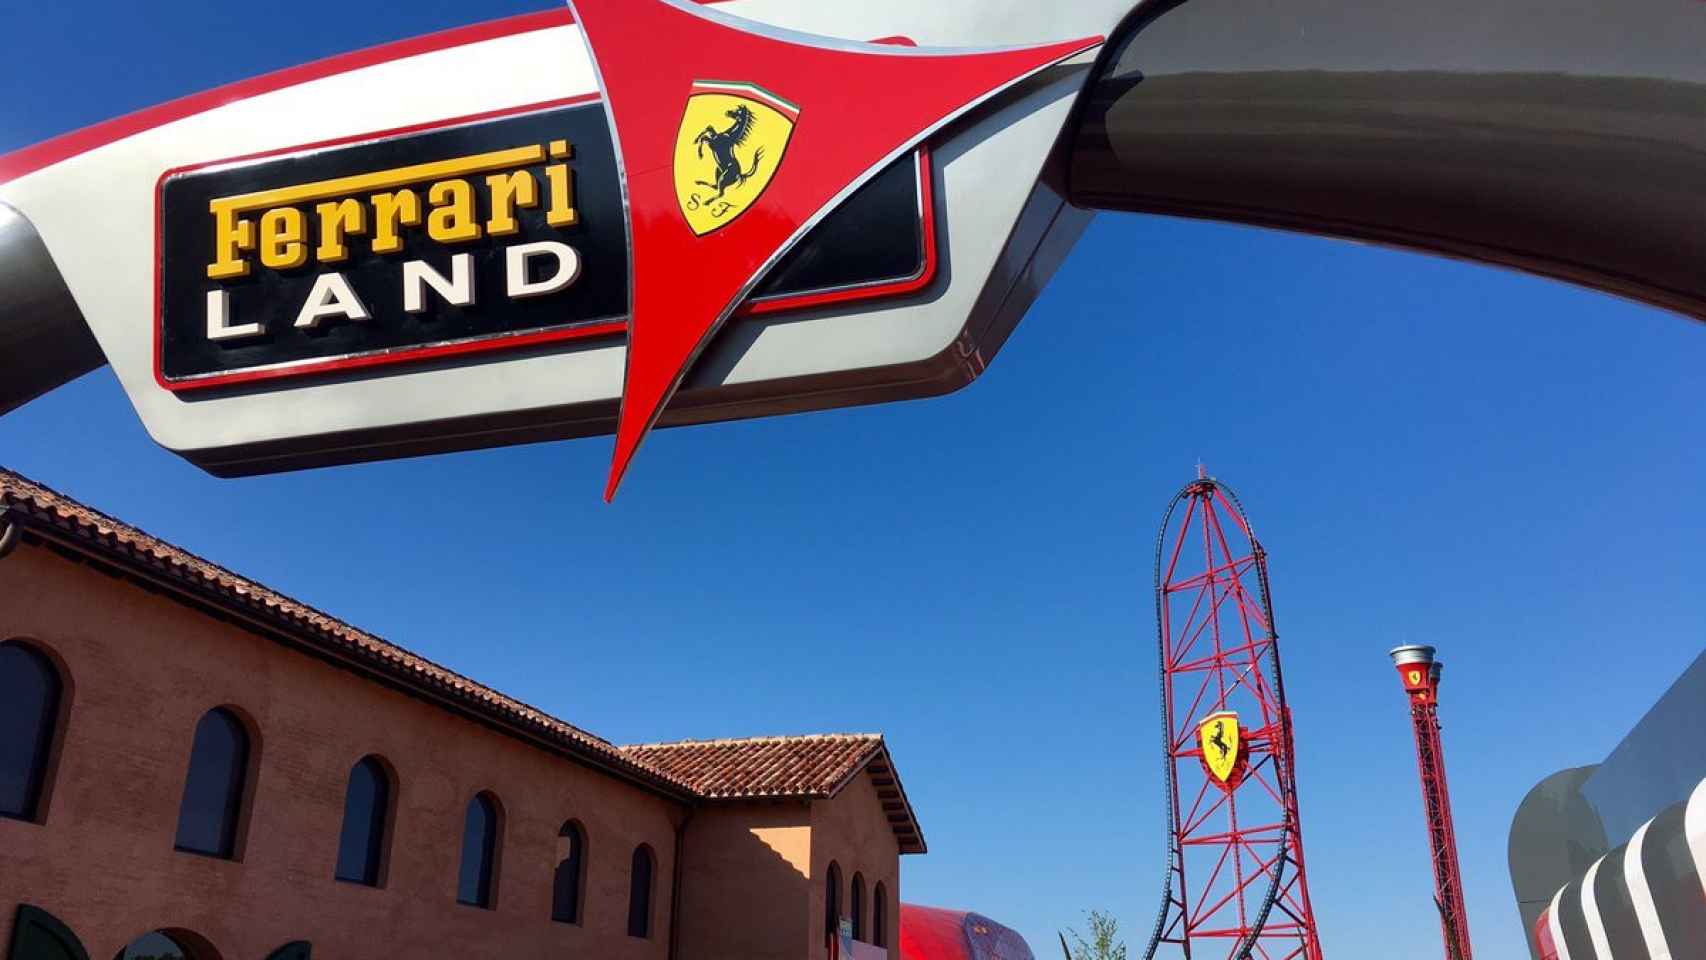 Imagen de Ferrari Land en el momento de su inauguración en Port Aventura World / CG